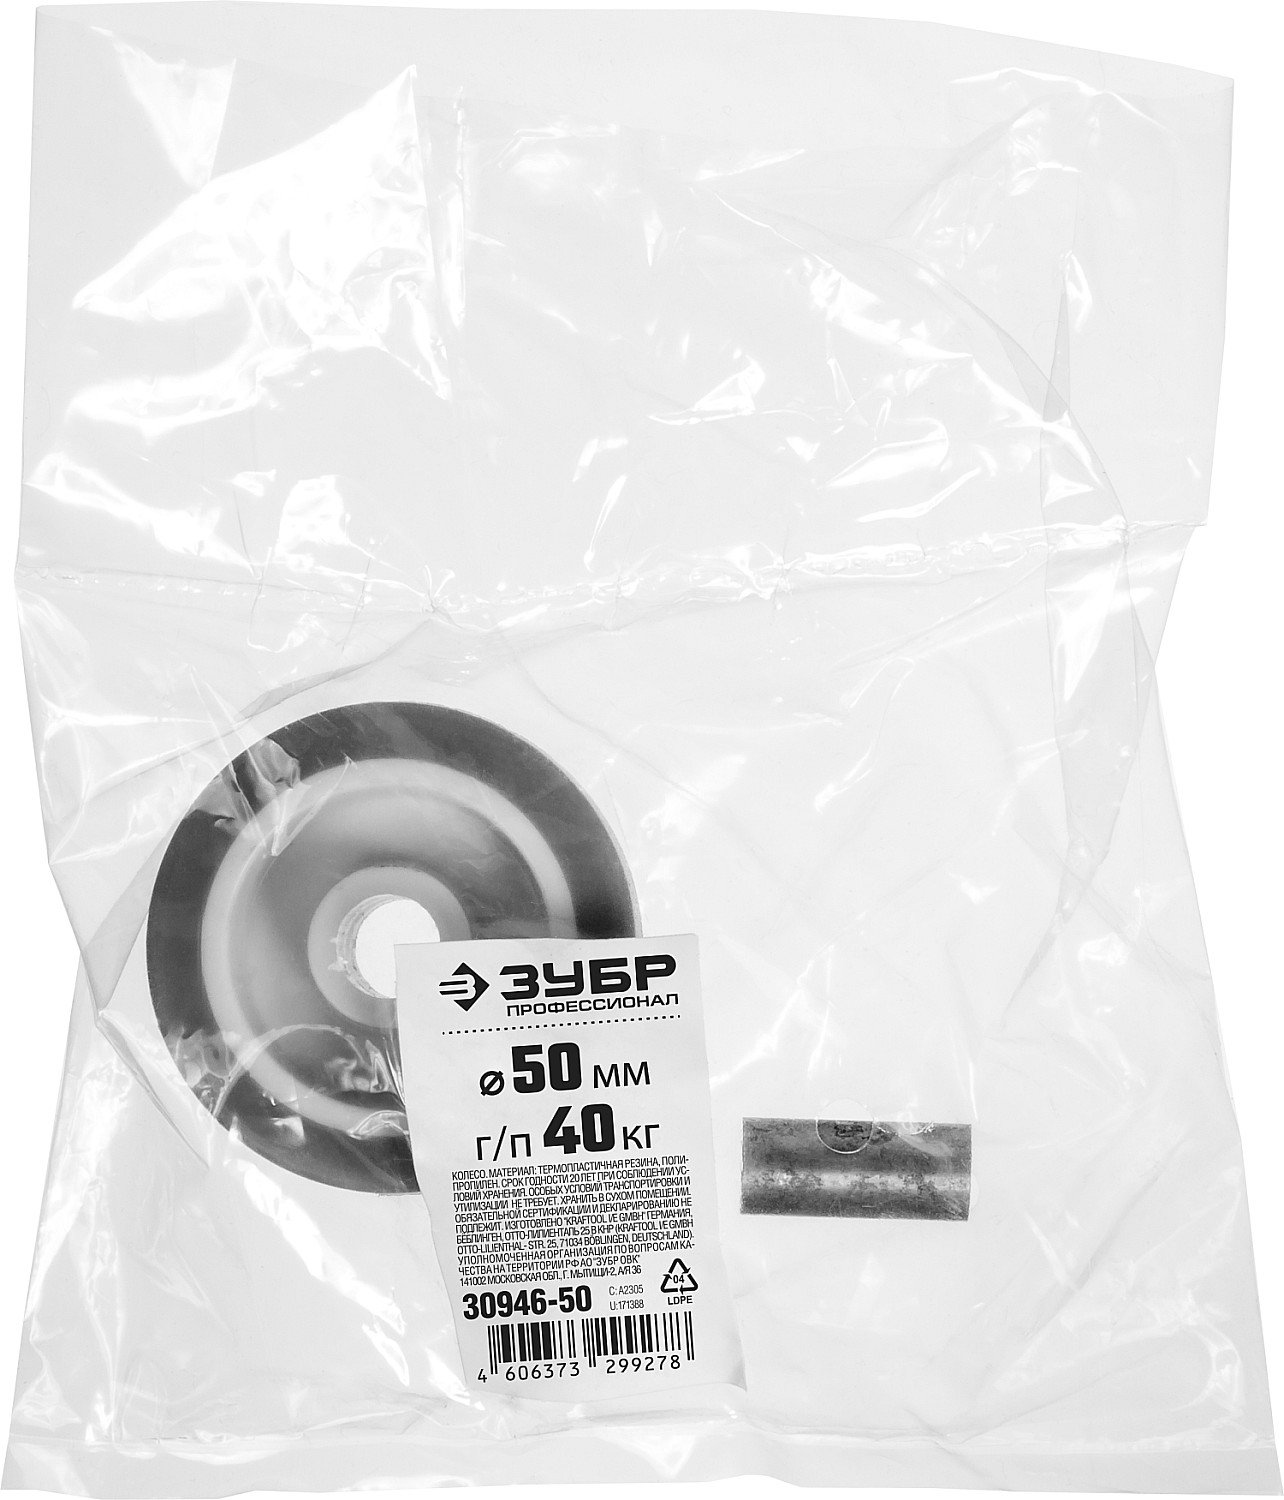 Колесо термопластич. резина полипропилен ЗУБР Профессионал d 50 мм г п 40 кг (30946-50)